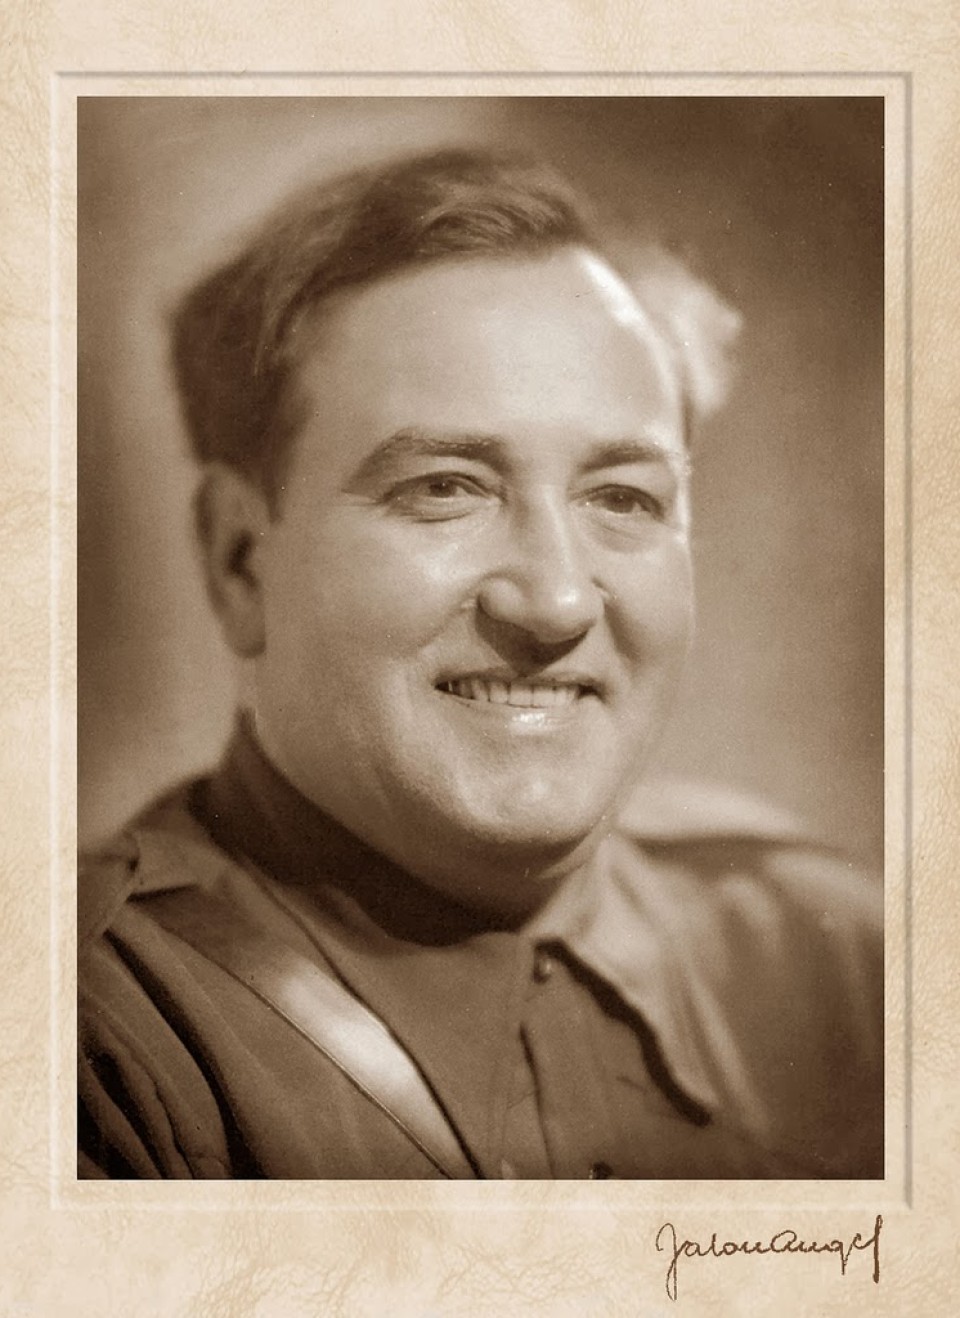 Imagen miguel-fleta-con-uniforme-de-la-falange-por-jalon-angel.-zaragoza-1936.jpg